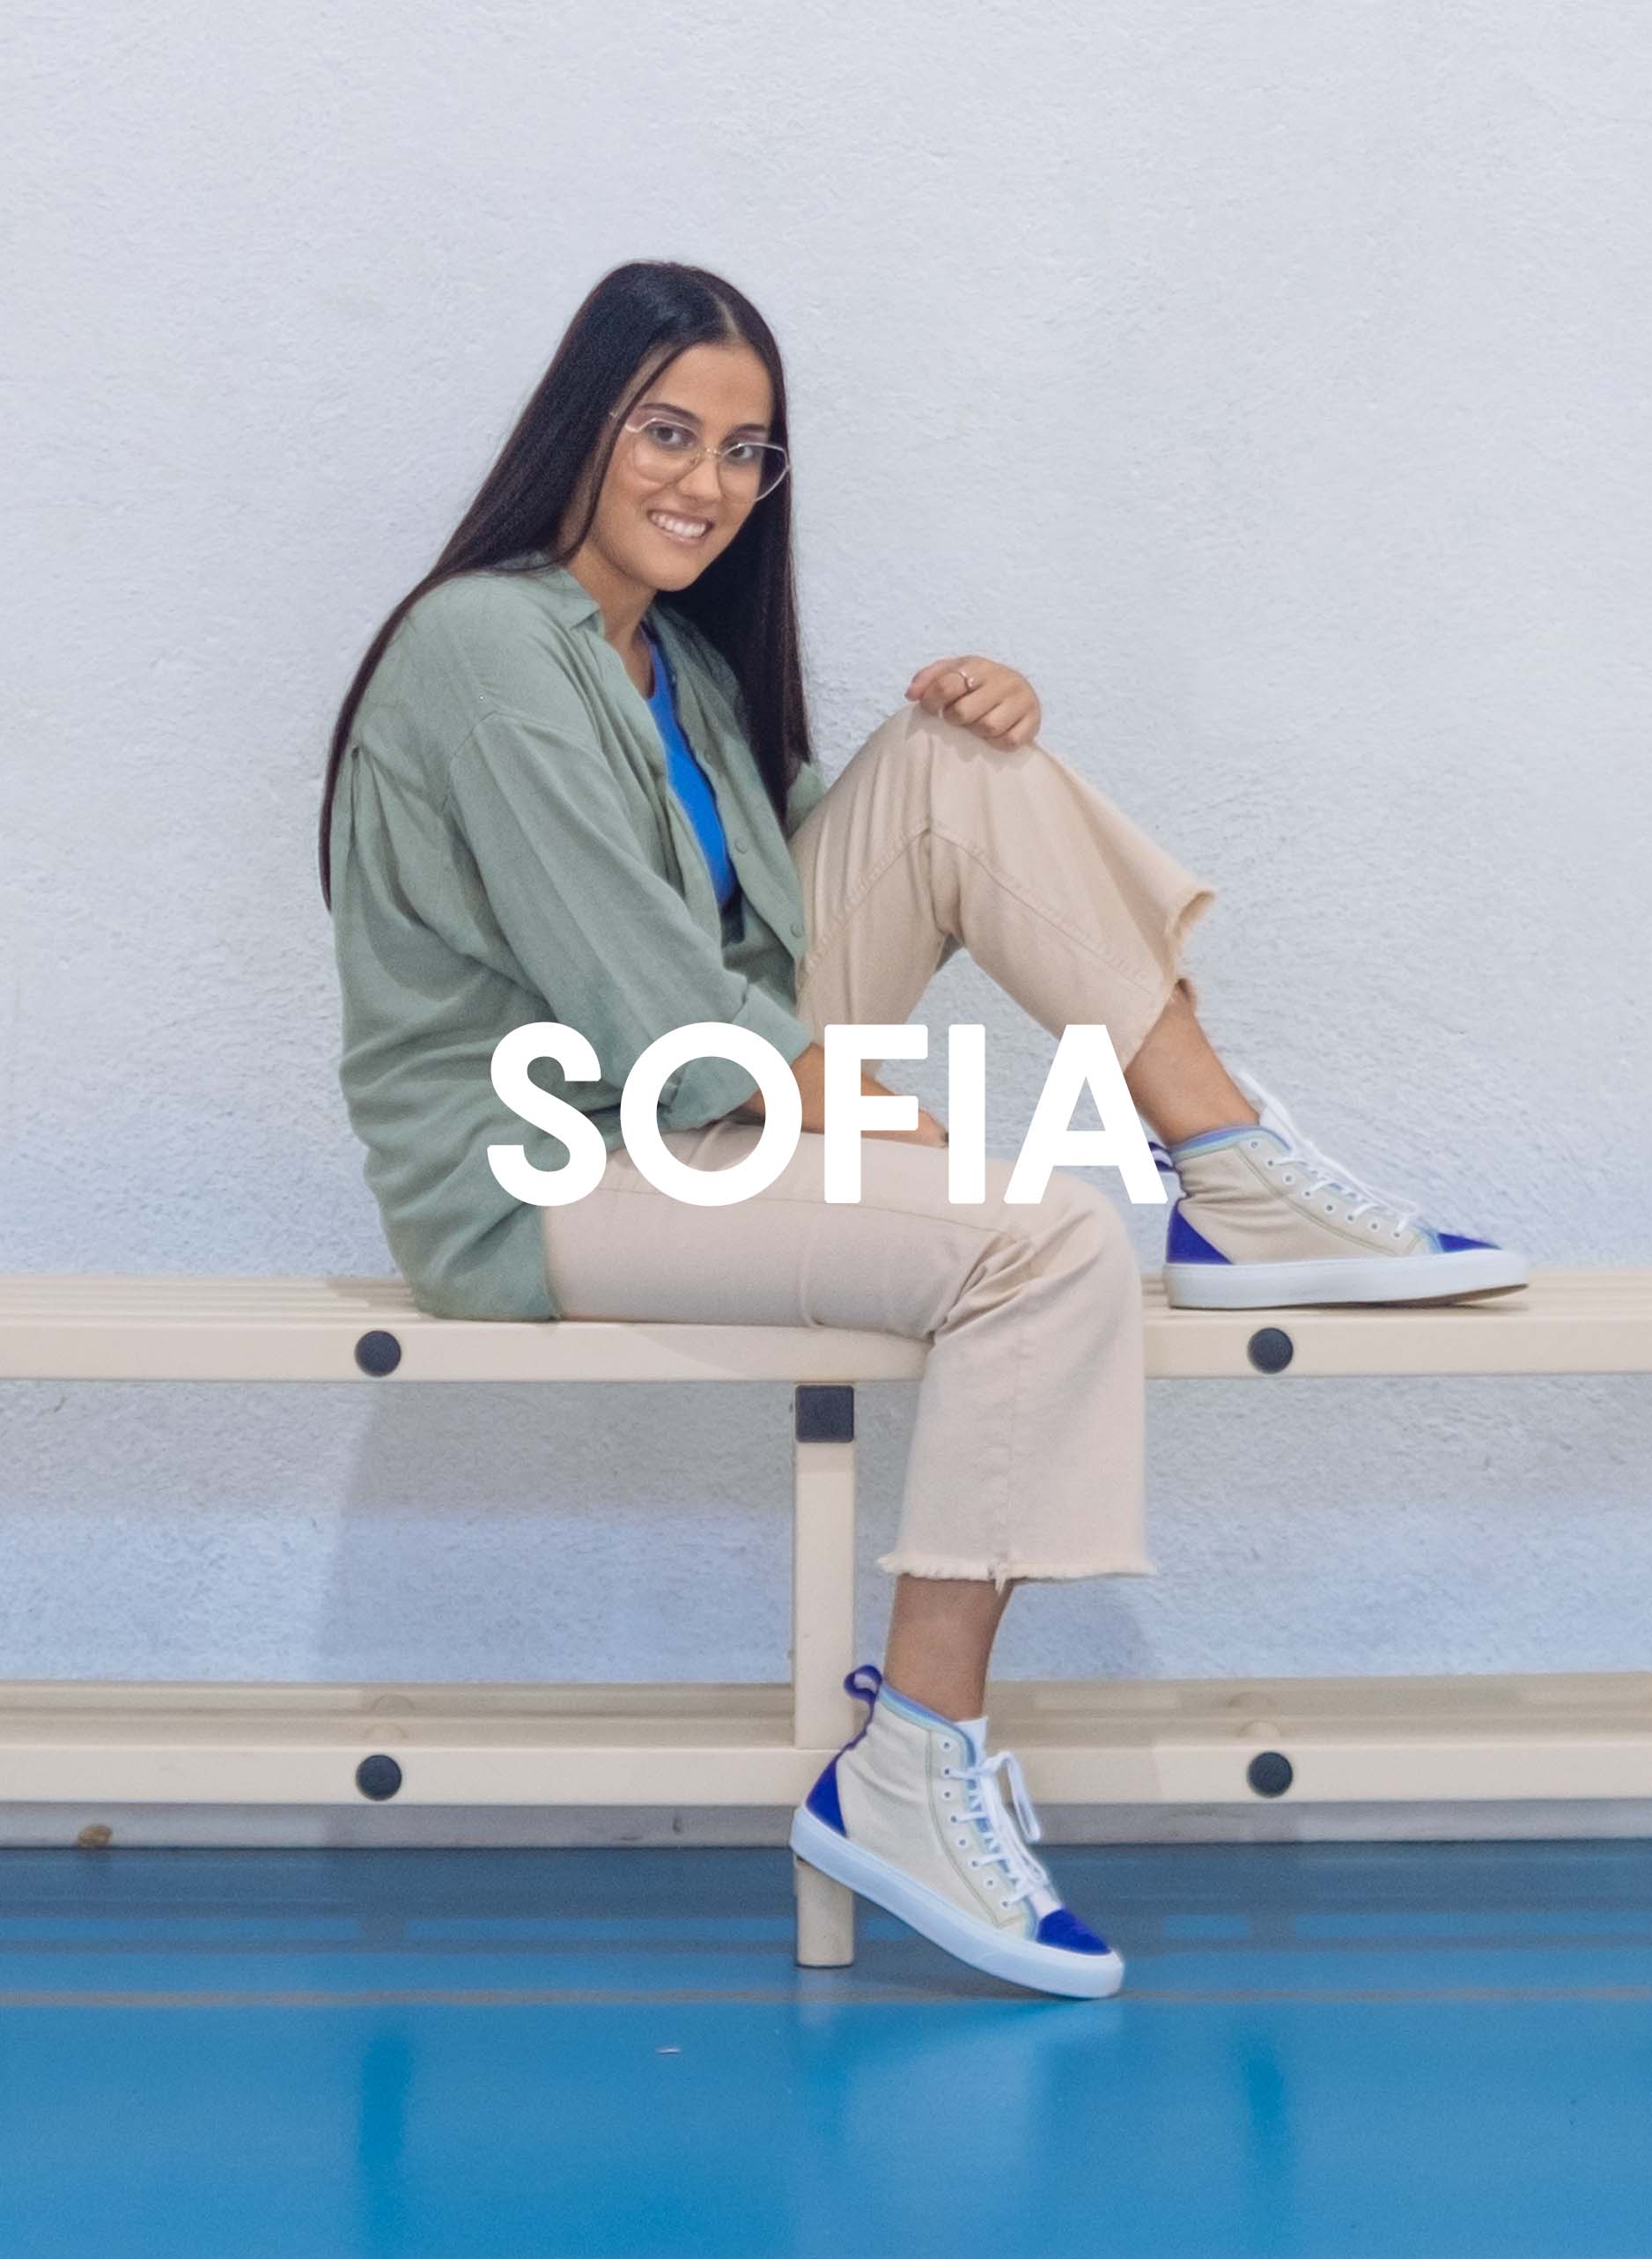 Sofia sitzt in grünem Hemd und beigefarbener Hose auf einer Bank mit Diverge sneakers, Förderung sozialer Auswirkungen und maßgefertigter Schuhe im Rahmen des IMAGINE-Projekts.